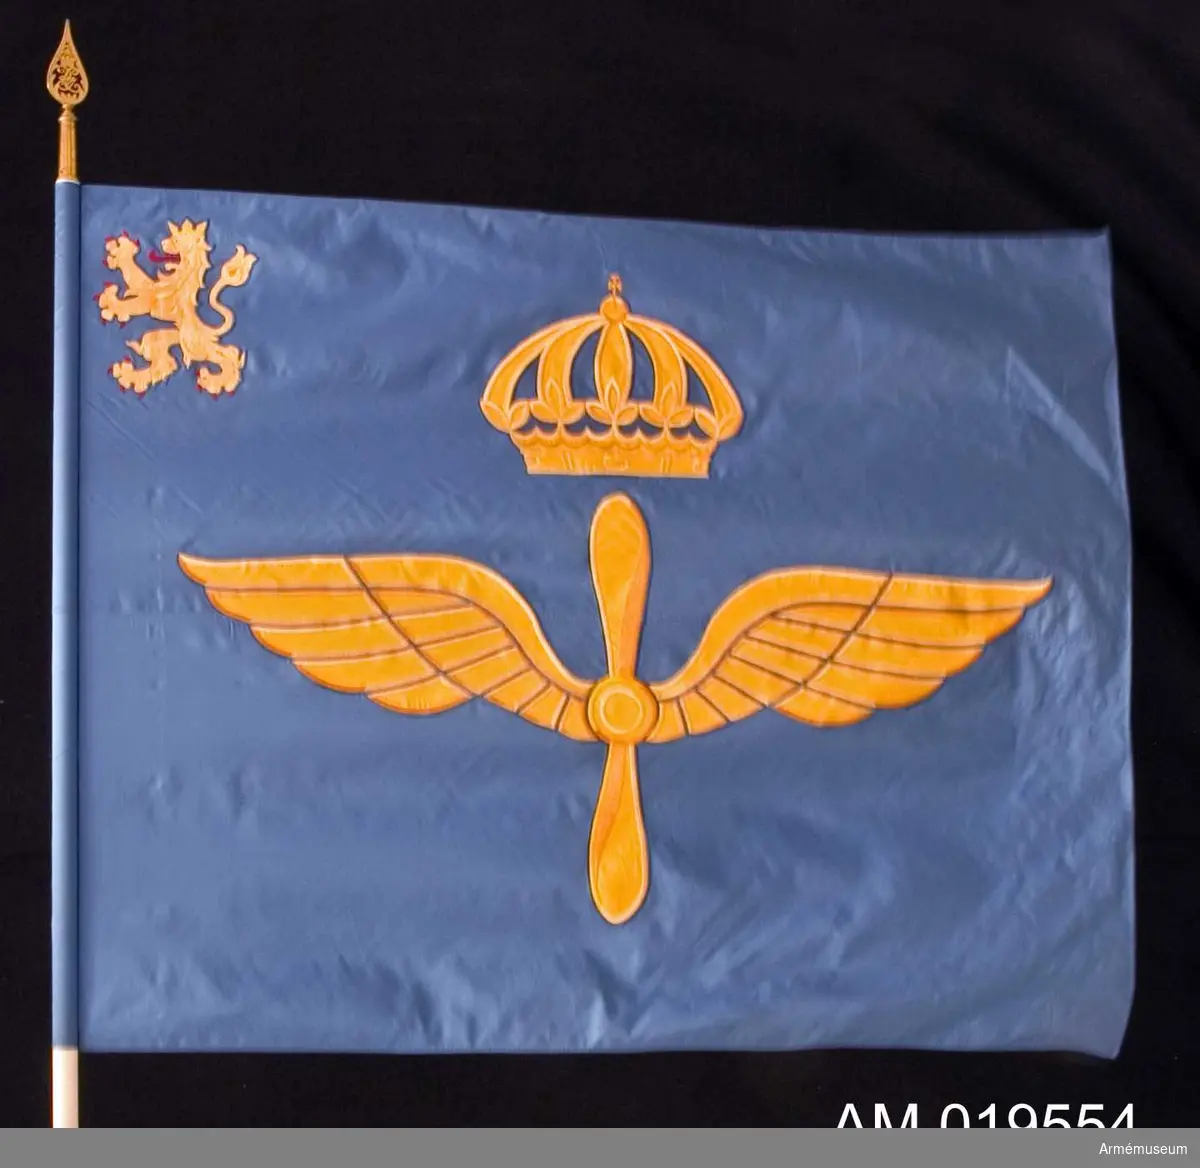 Fanan är av siden. Motivet består av en bevingad propeller krönt av en kunglig krona, broderad i gult silke. I övre vänstra hörnet finns ett götalejon med röd tunga och klor, även det broderat. På doppskon finns texten: "Kungliga Göta Flygflottilj".